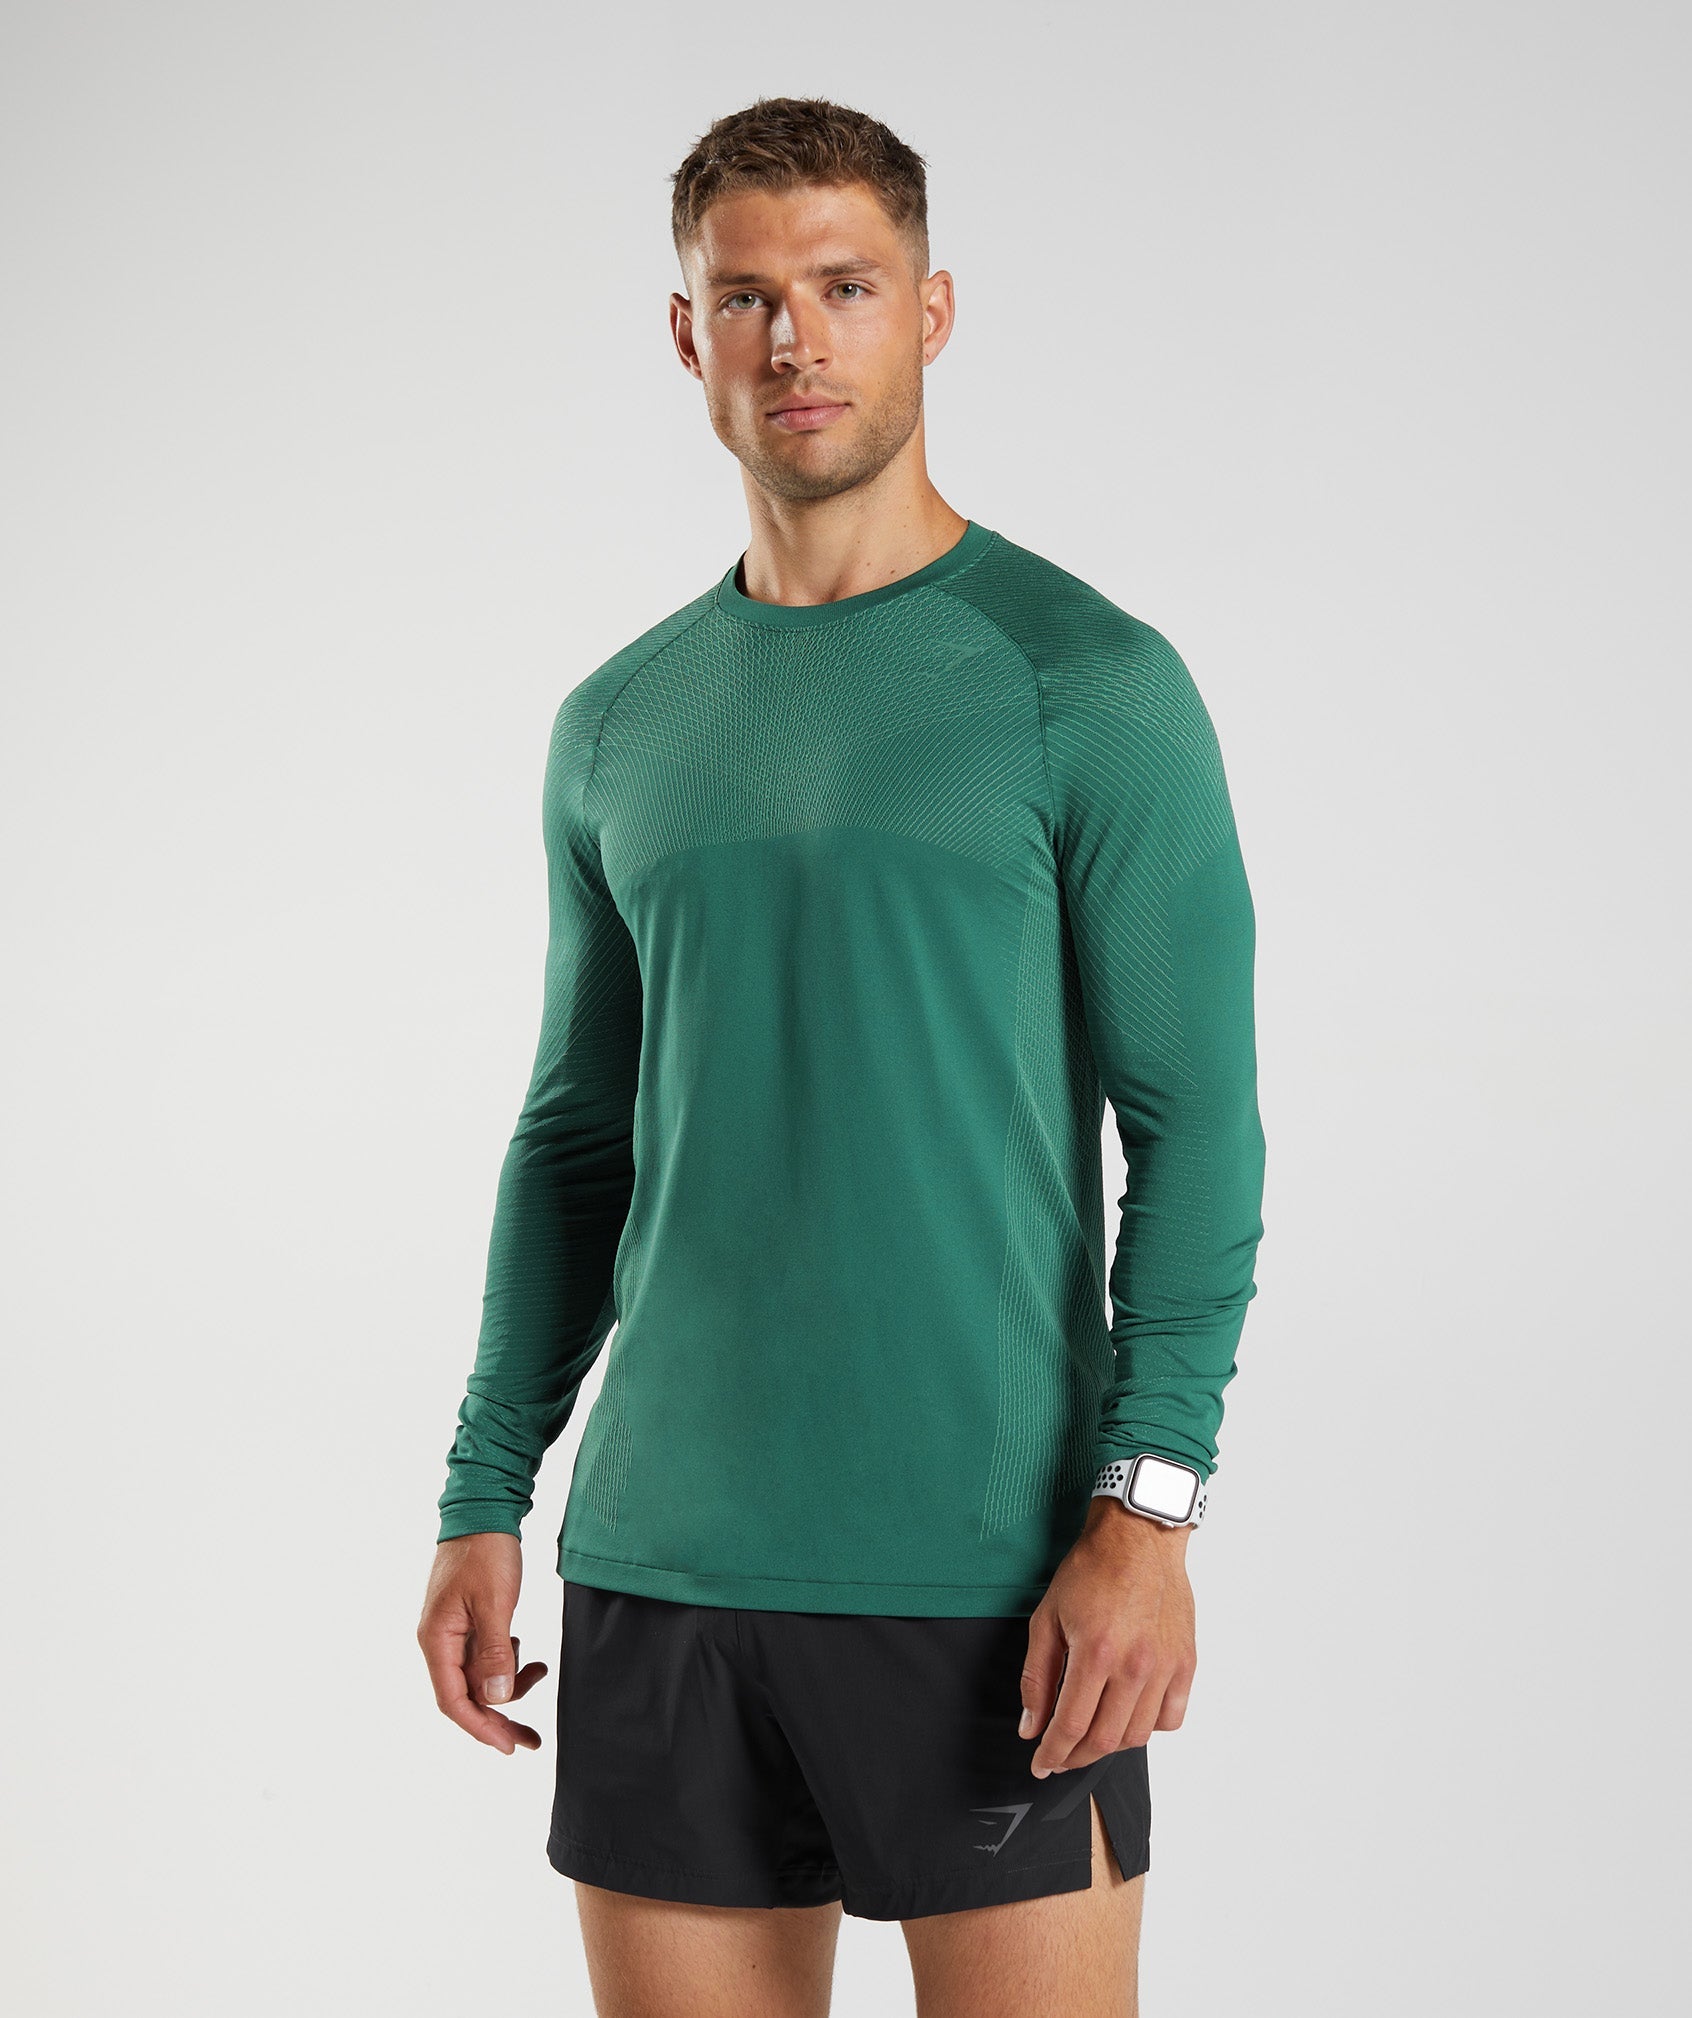 Gymshark Training Oversized T-shirt - Hoya Green